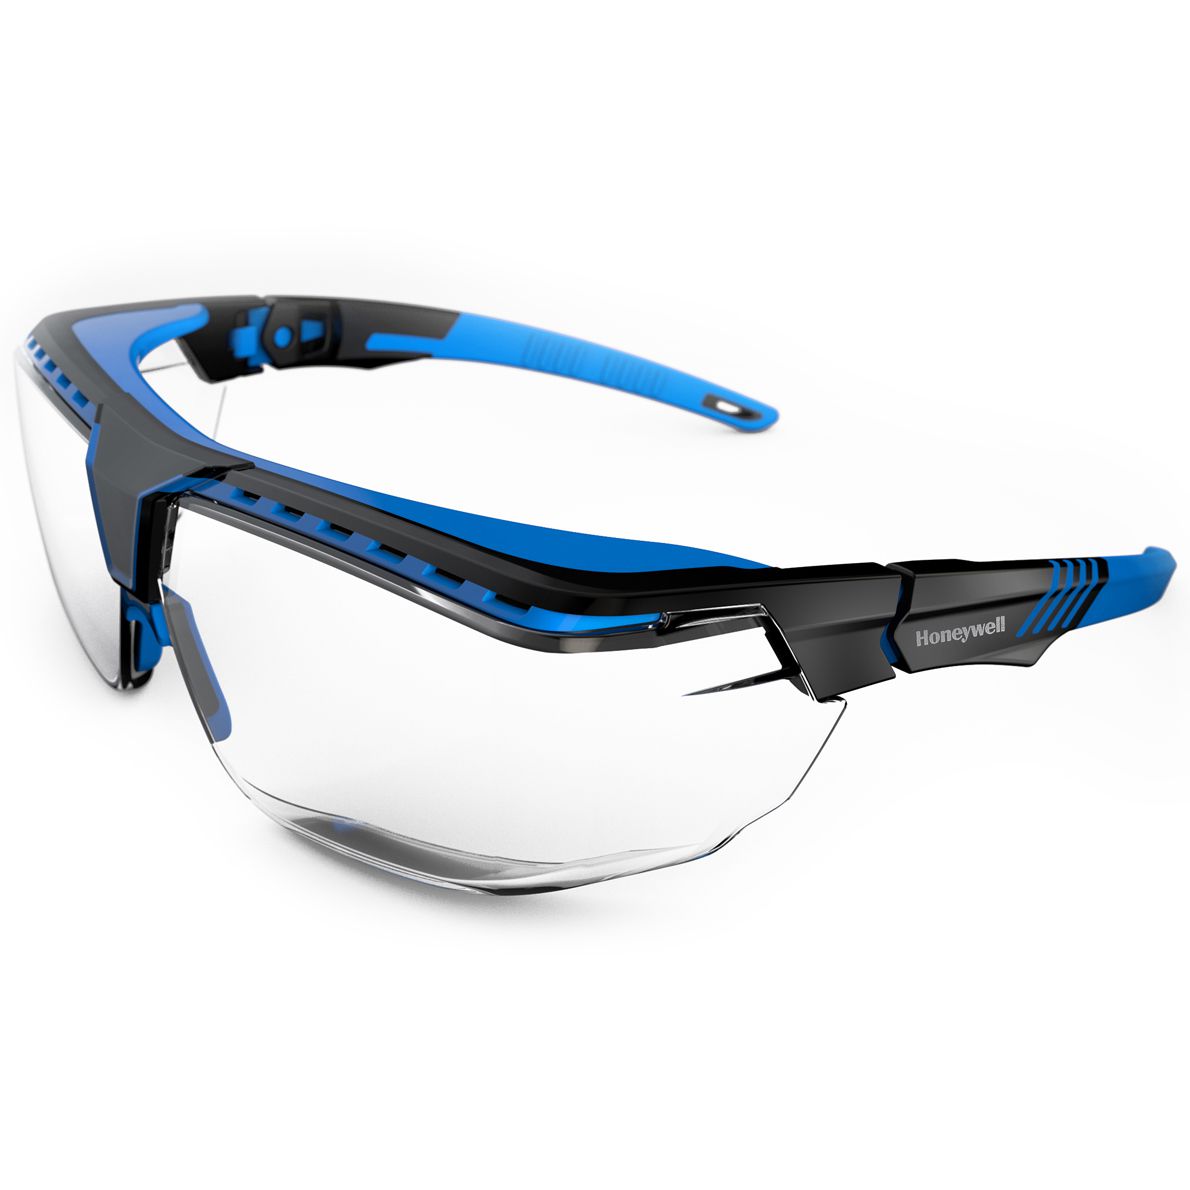 Honeywell Avatar OTG Schutzbrille - für Brillenträger - kratzfest & Anti-Reflex-beschichtet - EN 166 - Schwarz-Blau/Klar